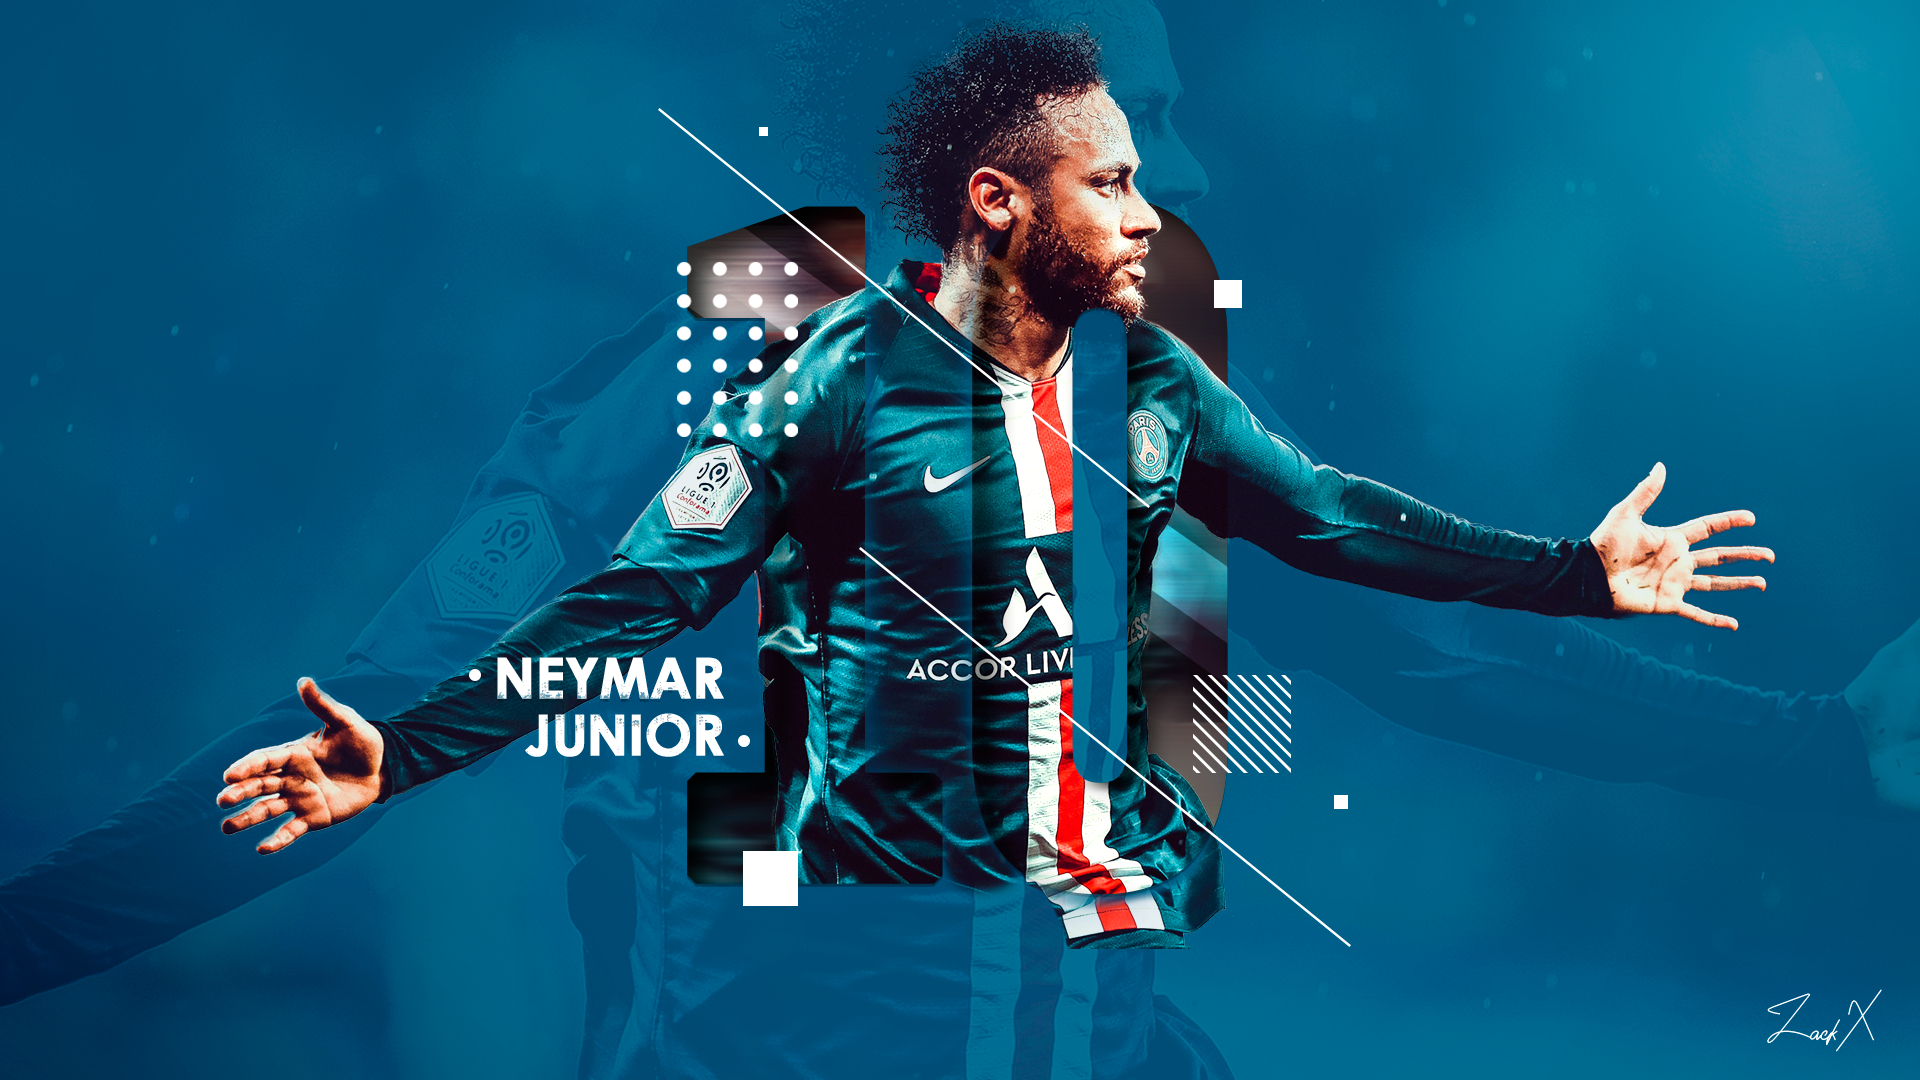 1920x1080 Zack on Twitter | Neymar jr, Neymar, Football canvas